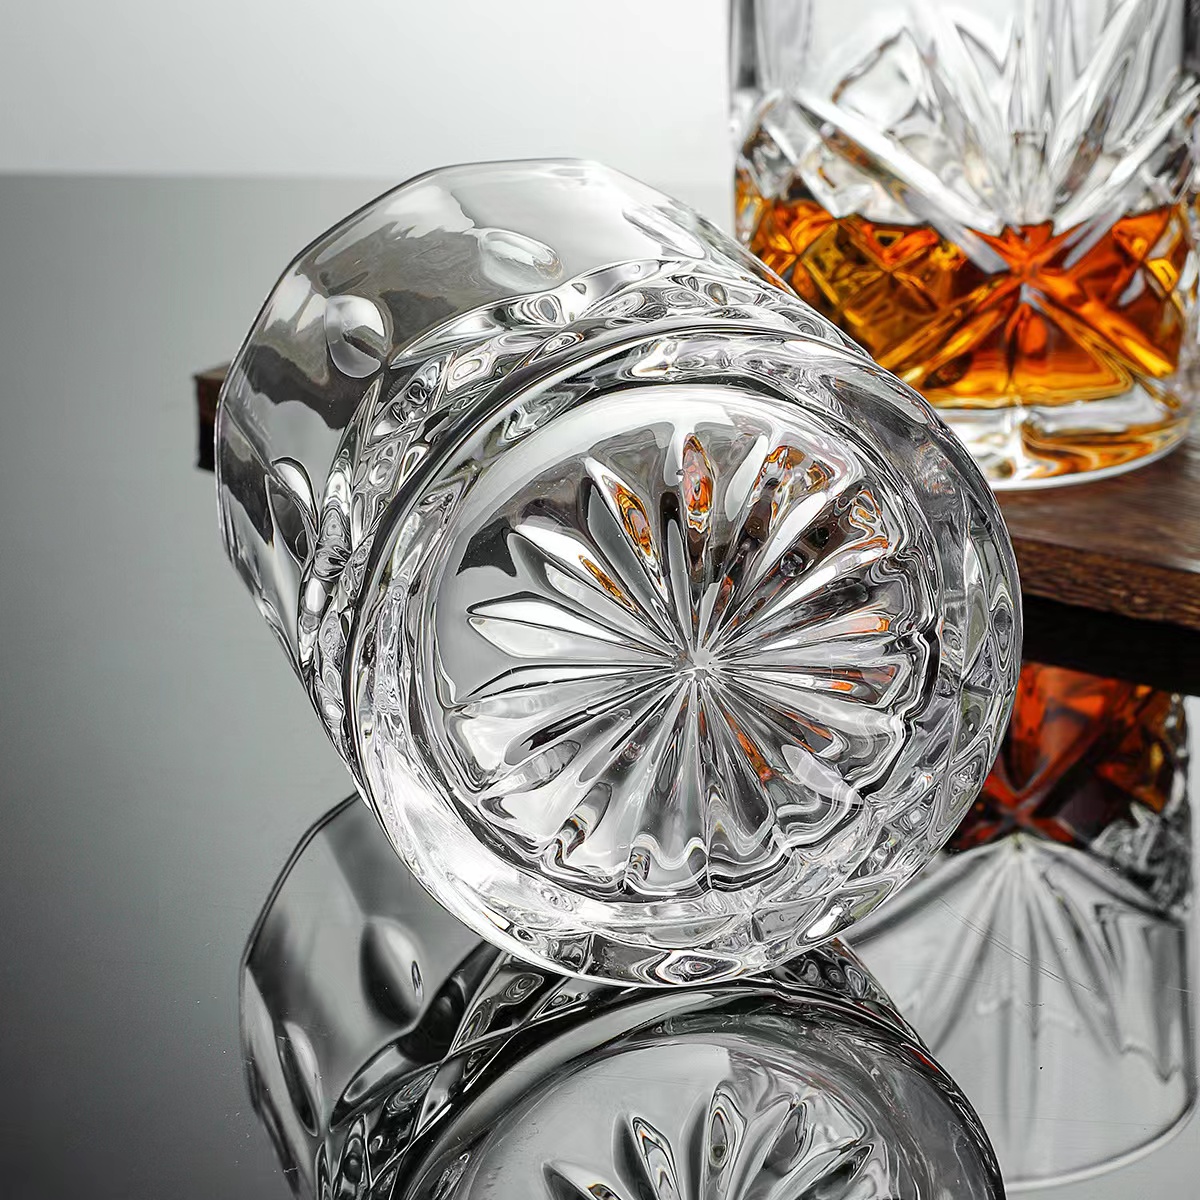 Altmodische Whiskygläser für Scotch, Bourbon, Likör04 - 副本